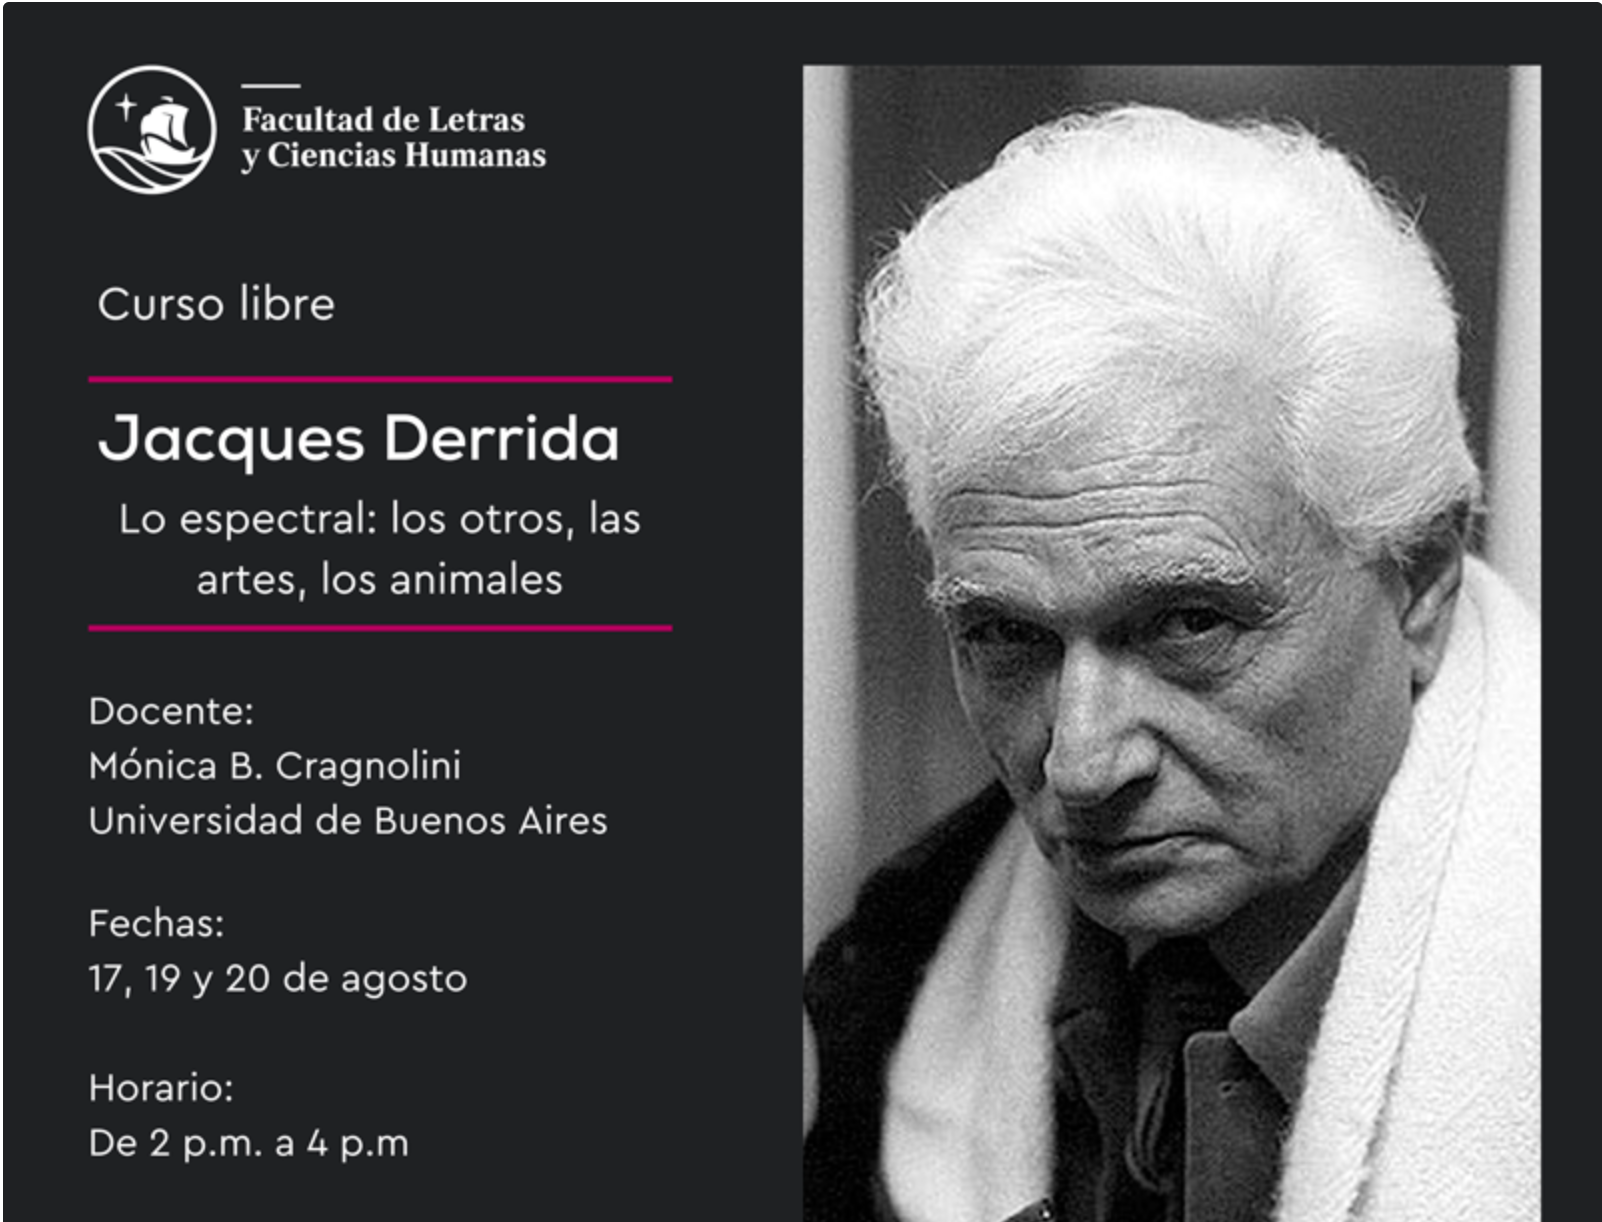 Curso libre: “Jacques Derrida. Lo espectral: lo otro, las artes, los animales” [videos]